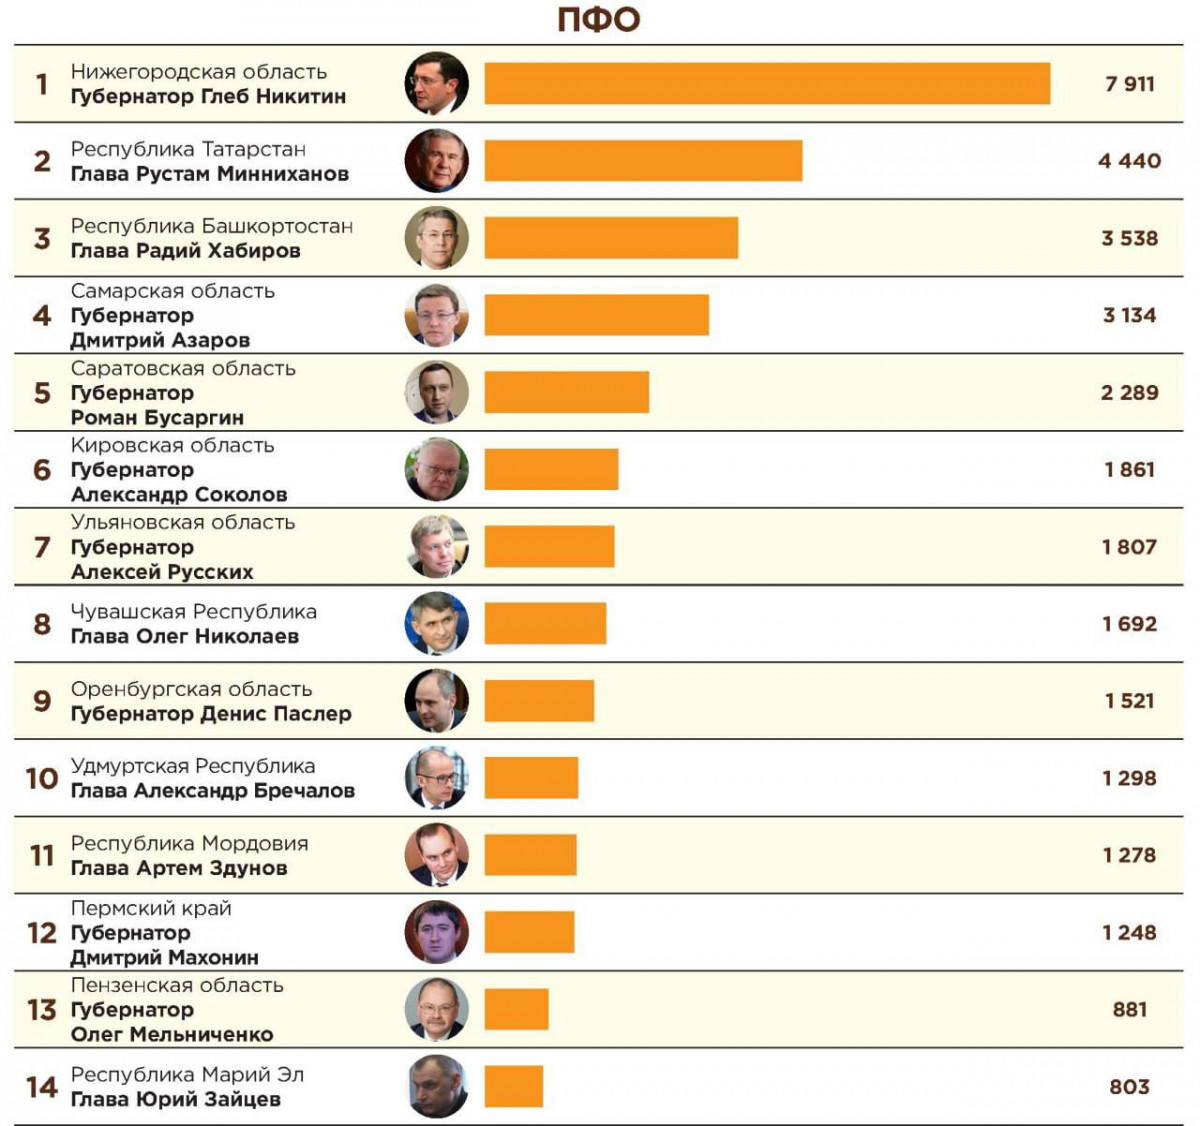 Никитин стал самым популярным губернатором в Telegram среди глав регионов ПФО